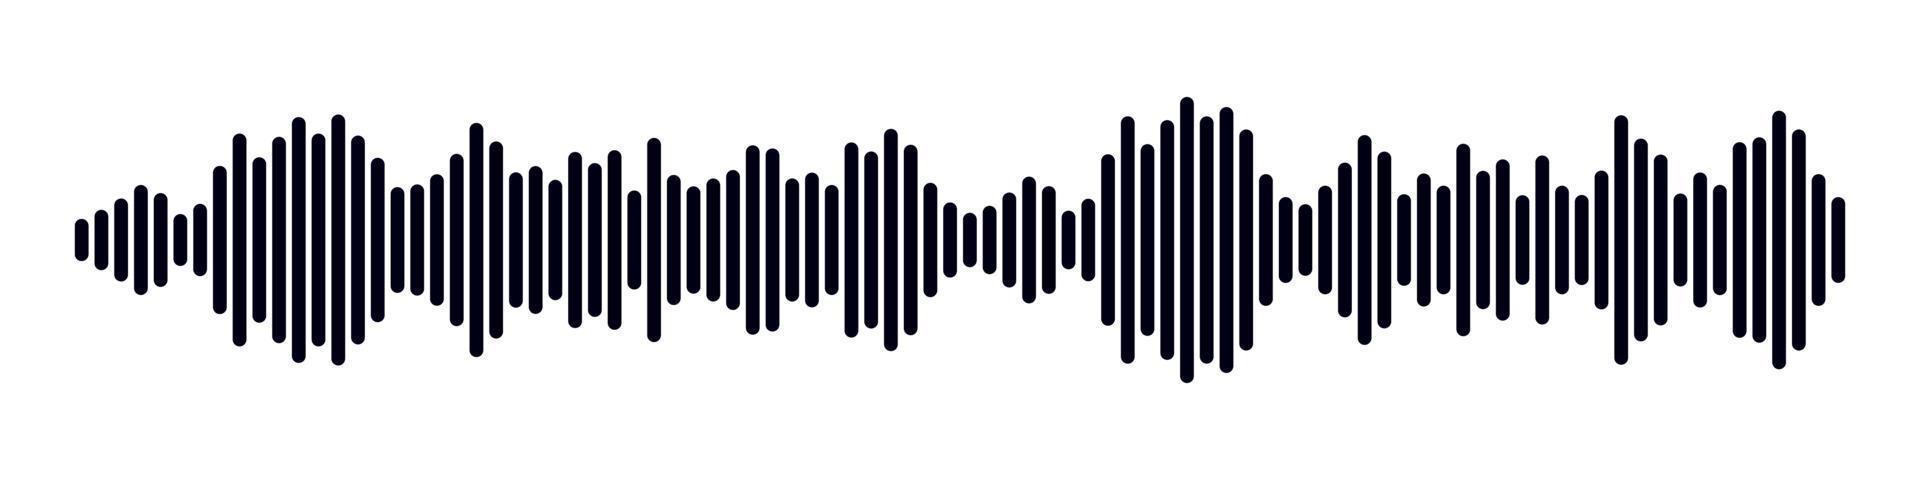 ljud radio form. abstrakt musik audio ljudvåg. vektor isolerat illustration